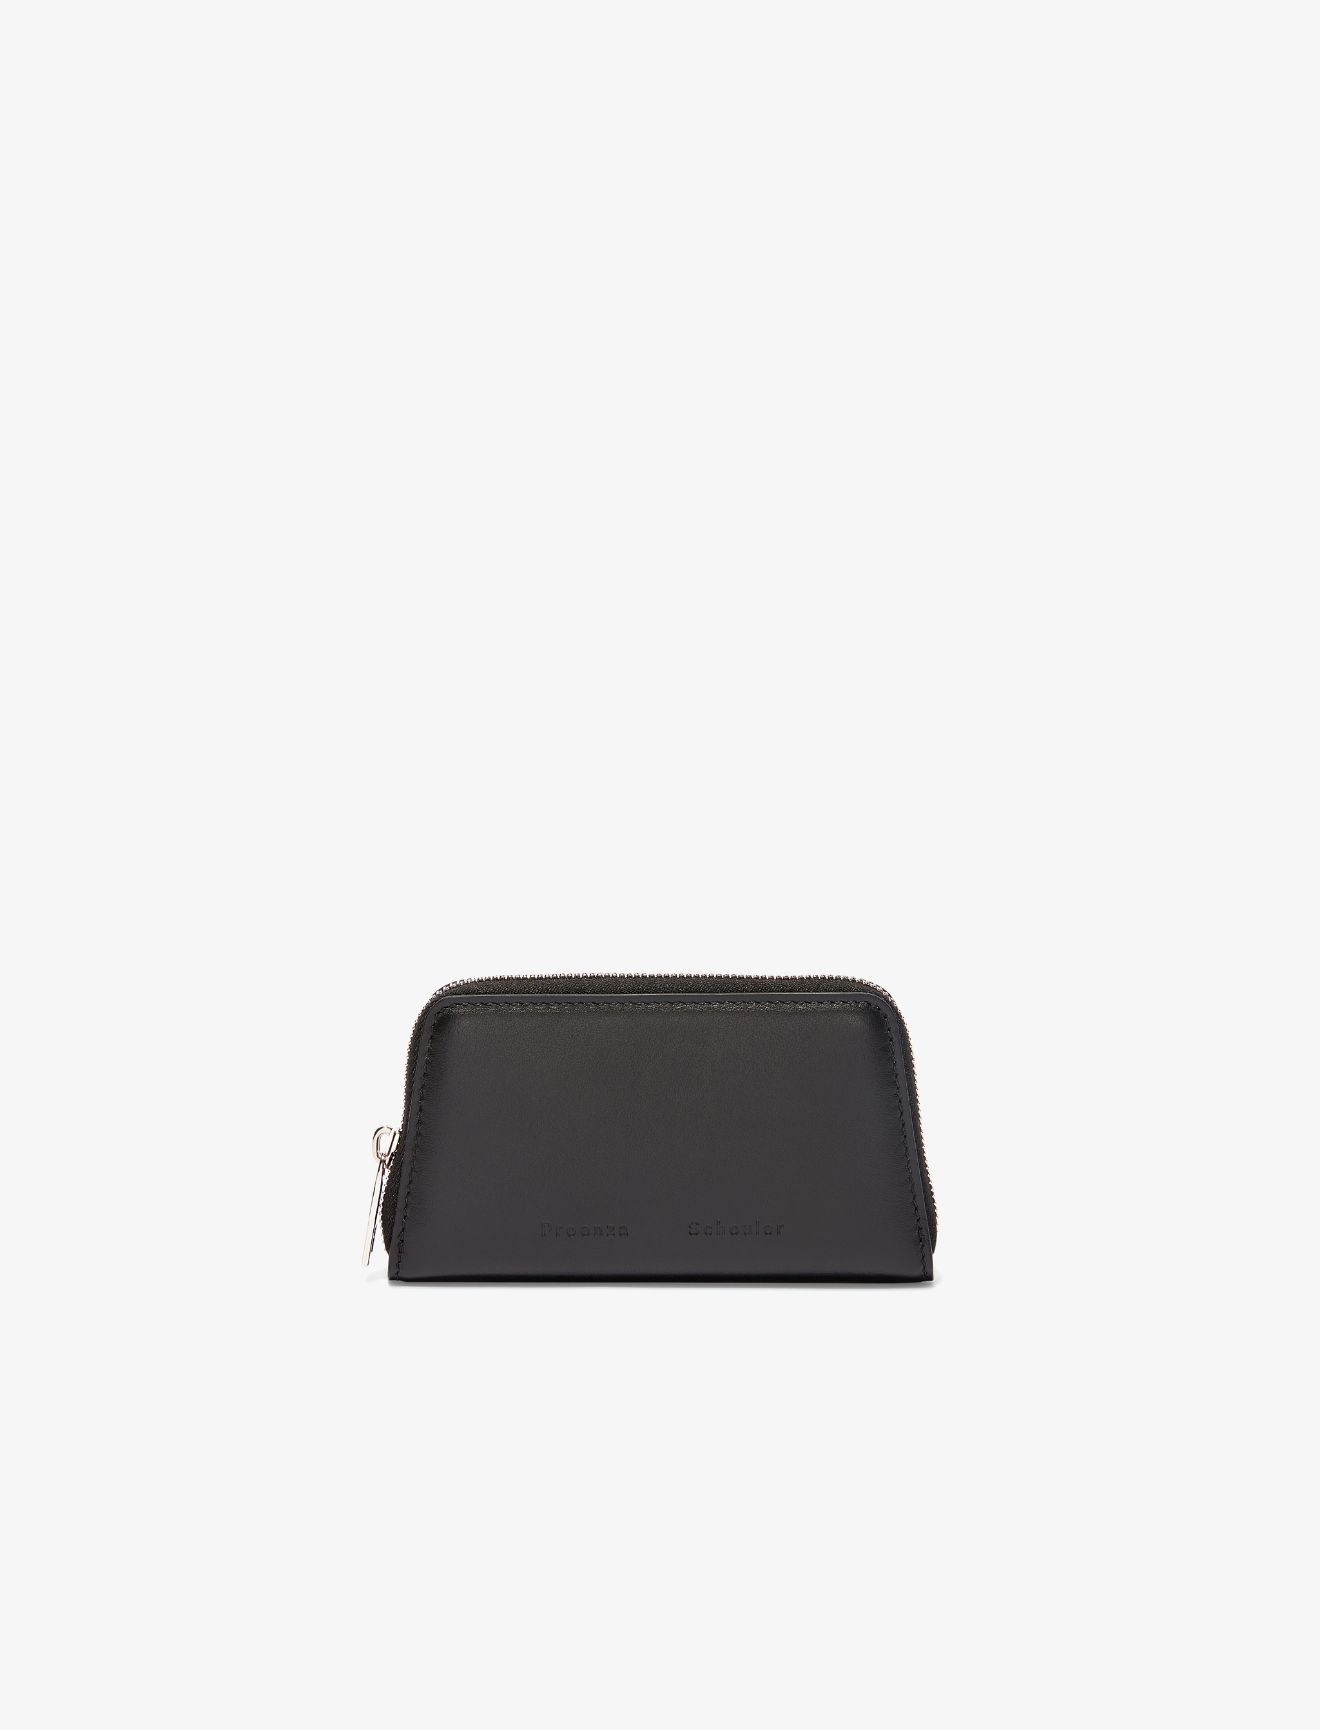 Trapeze Zip Compact Wallet in black | Proenza Schouler